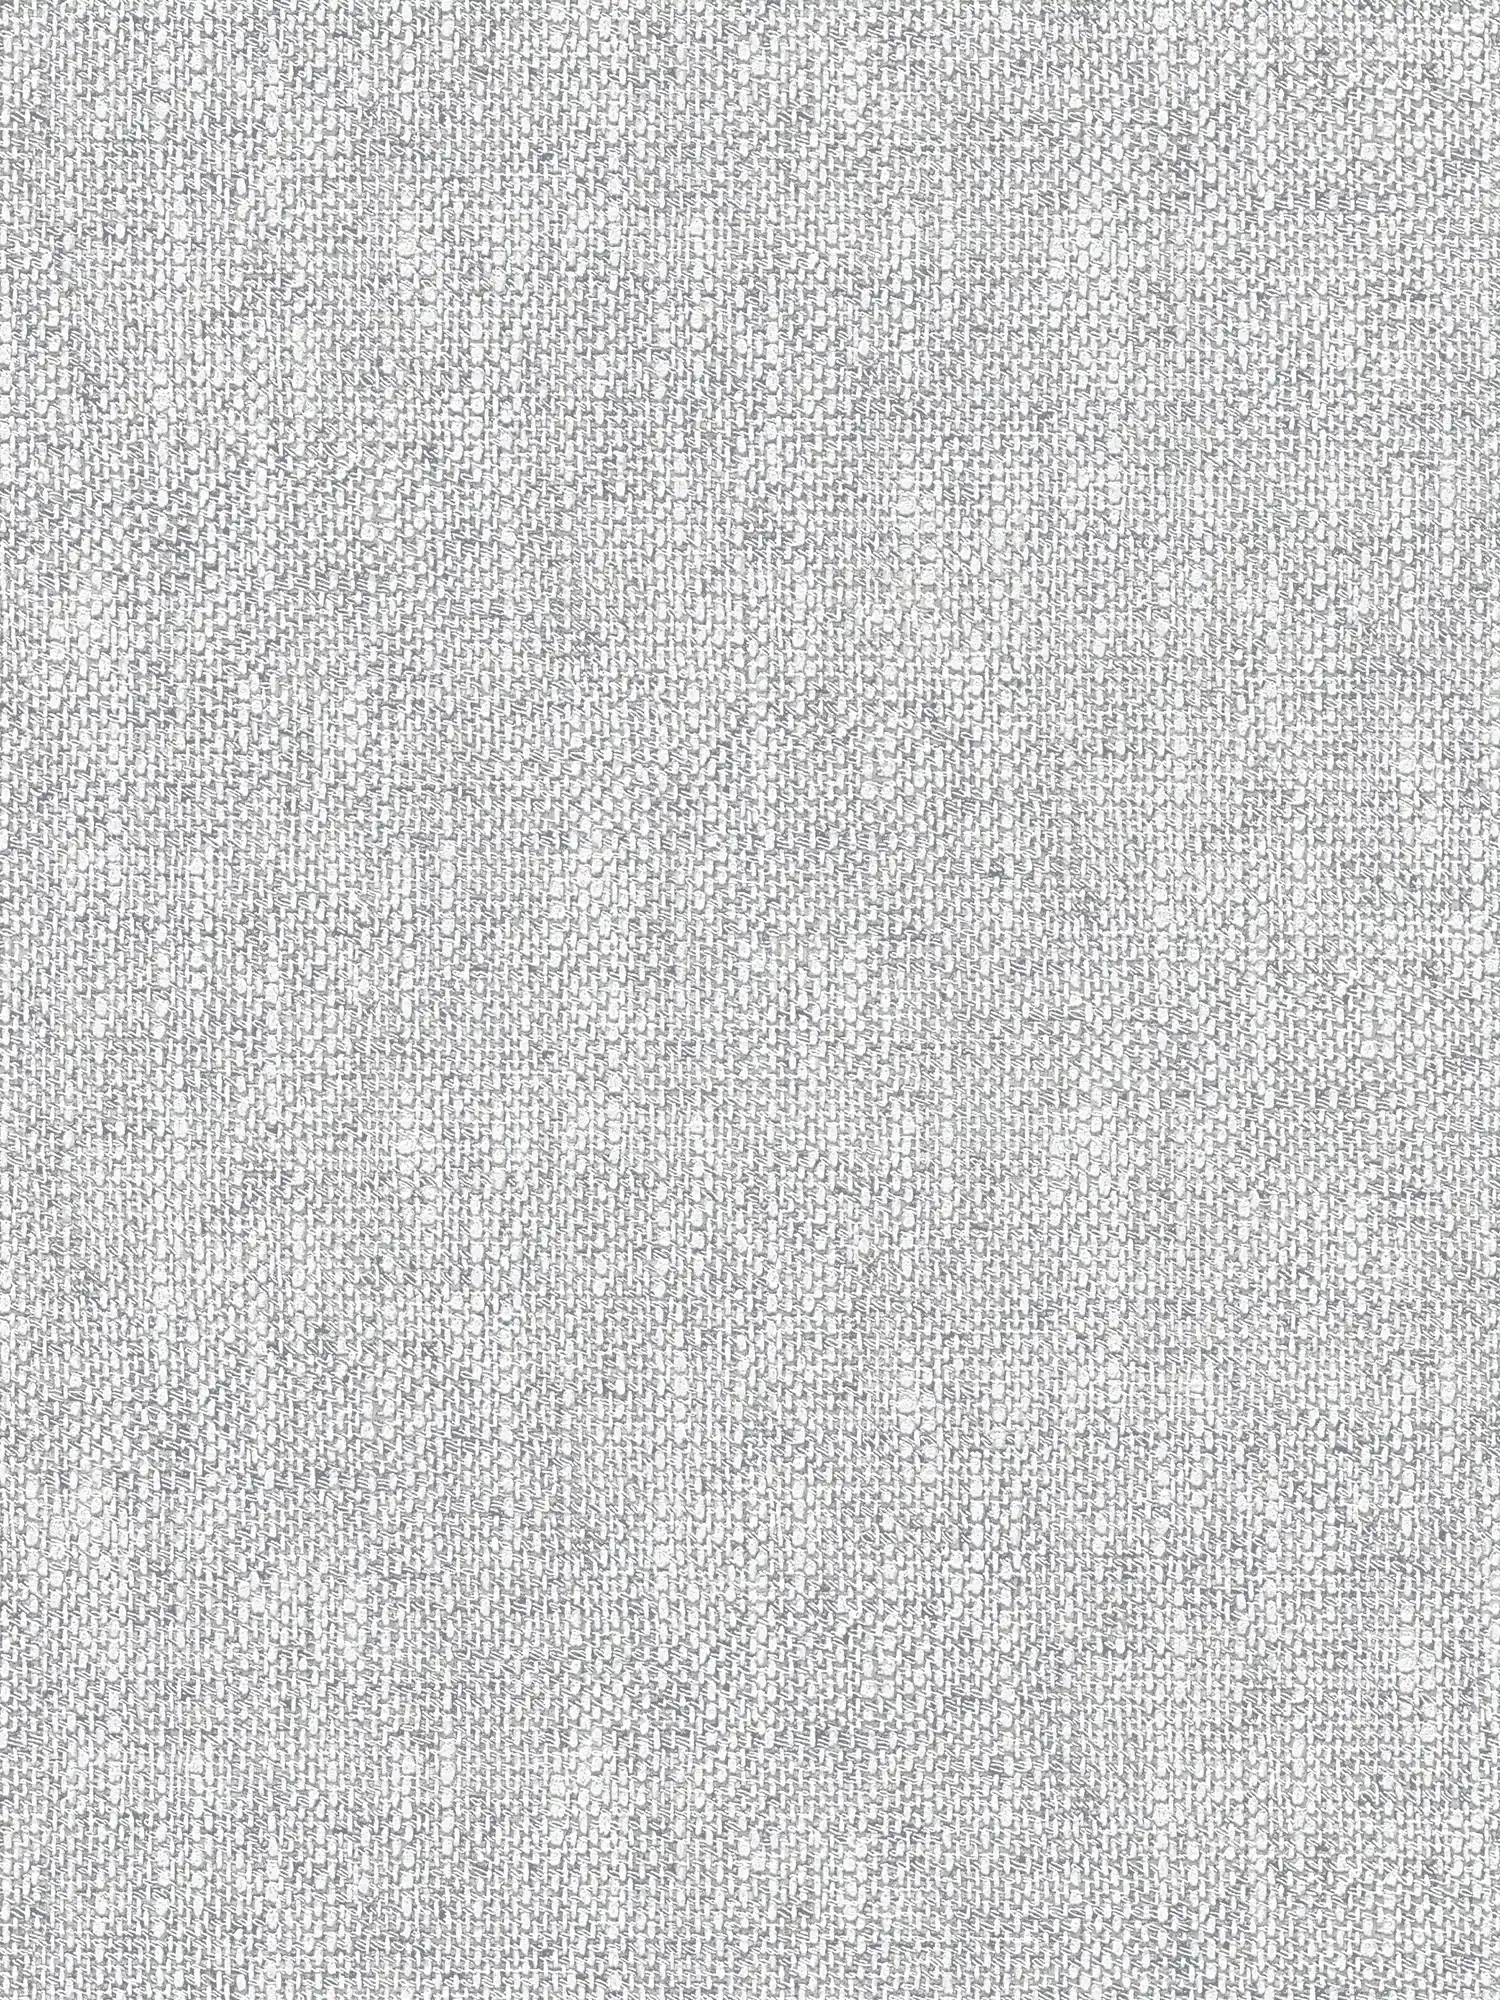 Papel pintado no tejido con aspecto de tela realista - gris, blanco
